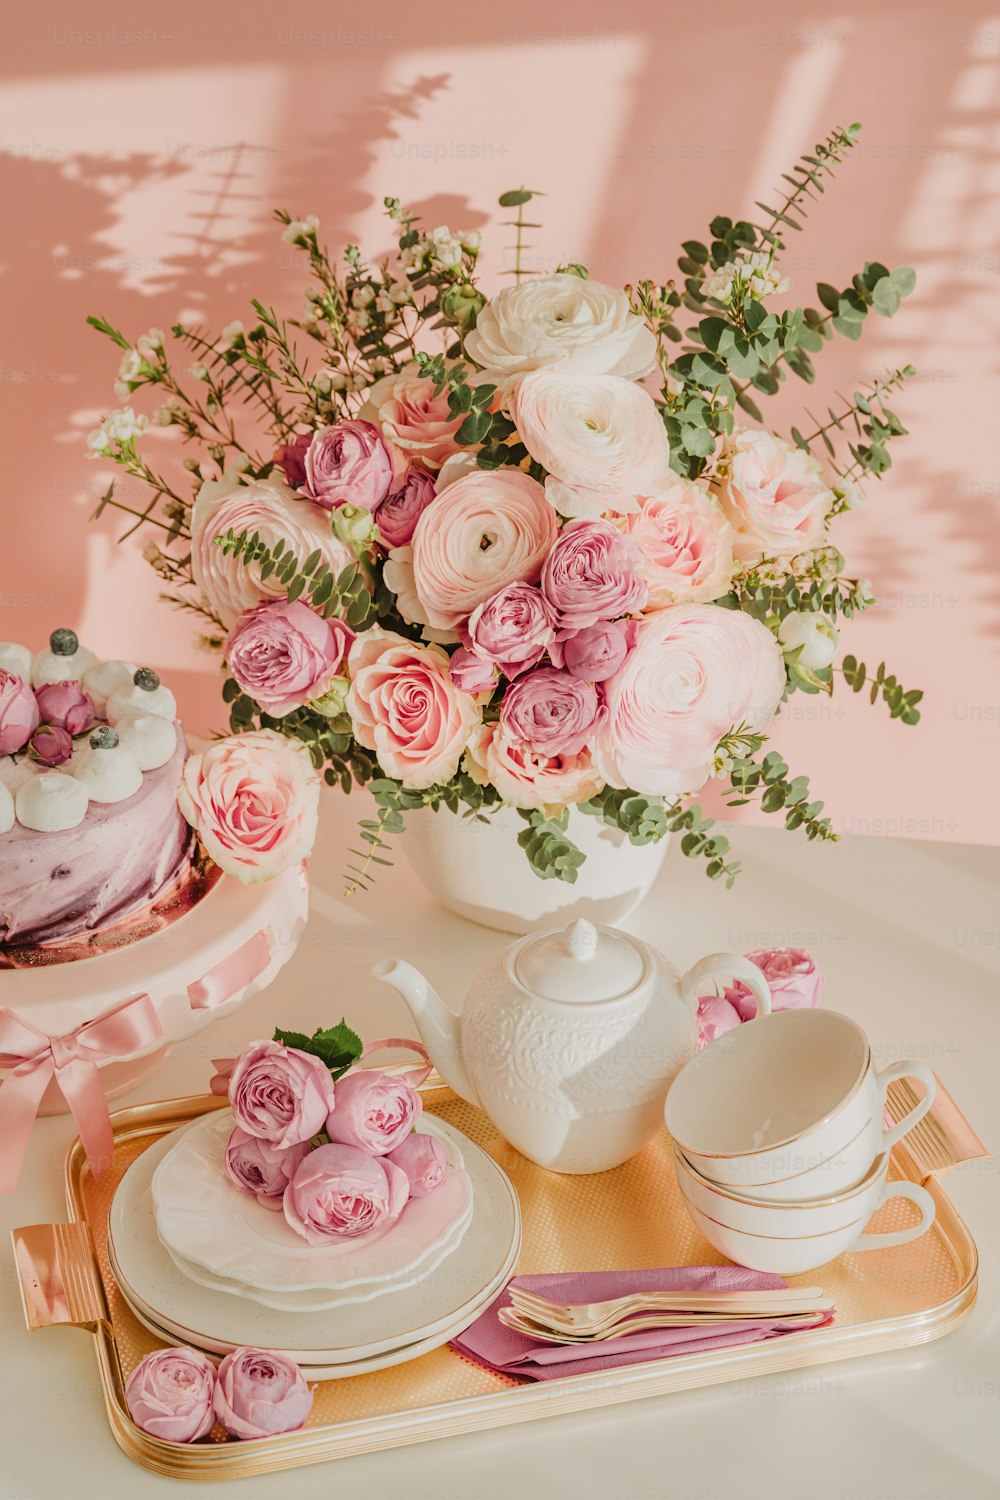 ケーキと花でいっぱいの花瓶をトッピングしたテーブル